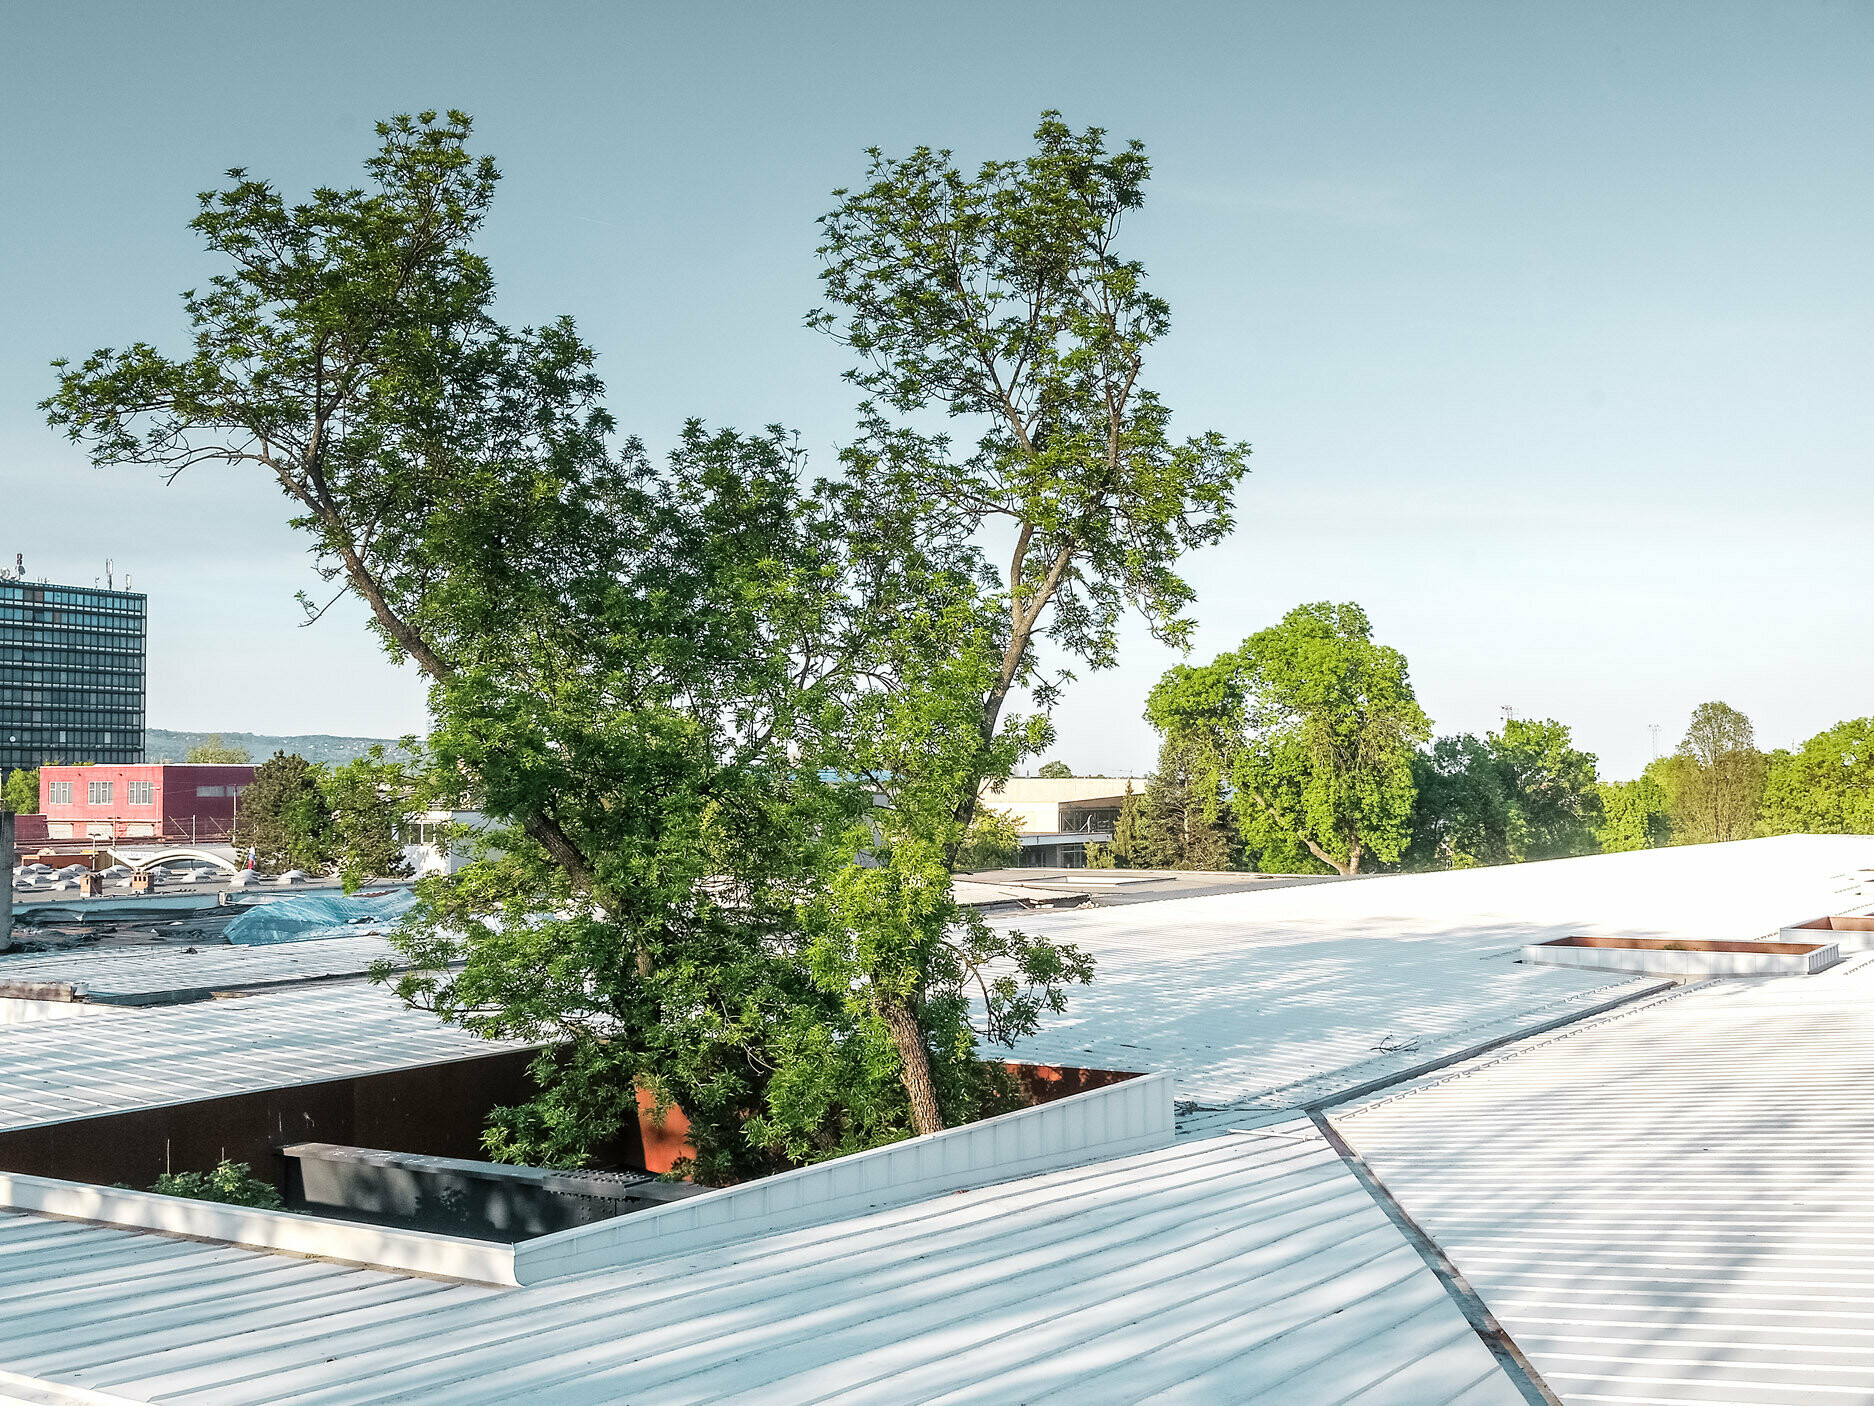 L’immagine mostra un’autostazione in Croazia con un tetto Prefalz bianco di PREFA. Grandi alberi attraversano il tetto in diversi punti, conferendo alla costruzione una particolare caratteristica architettonica. Sullo sfondo sono visibili altri edifici e un’alta torre adibita a uffici. L’immagine sottolinea la combinazione di architettura funzionale e ambiente naturale, con il tetto bianco e il verde degli alberi che formano un contrasto sorprendente.